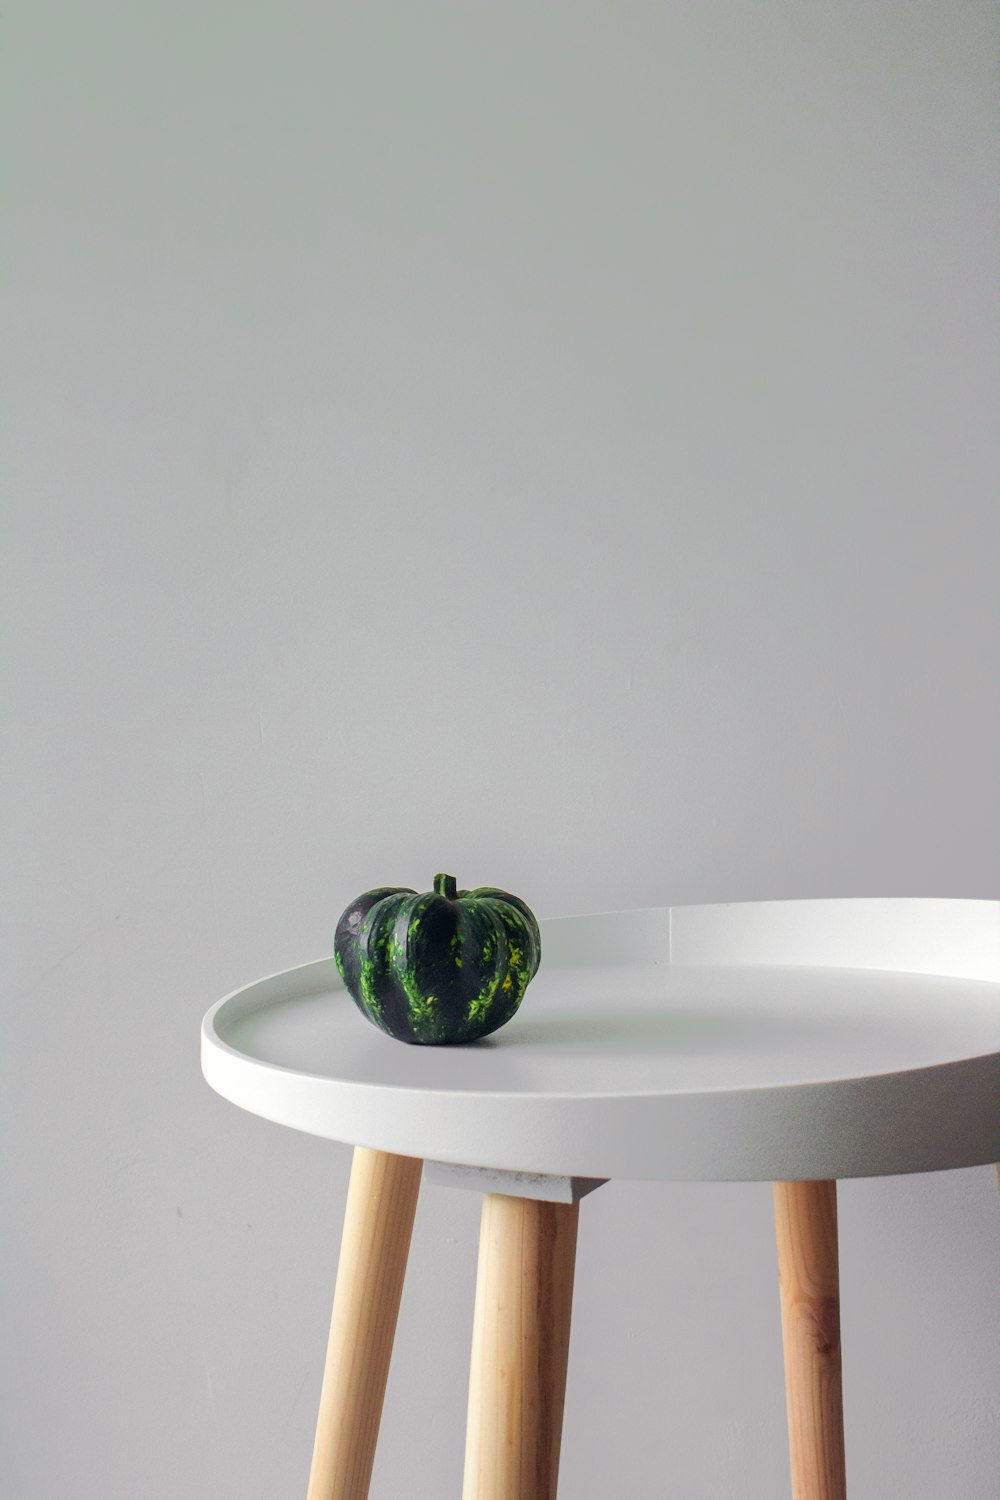 grüne runde Frucht auf weißem Tisch